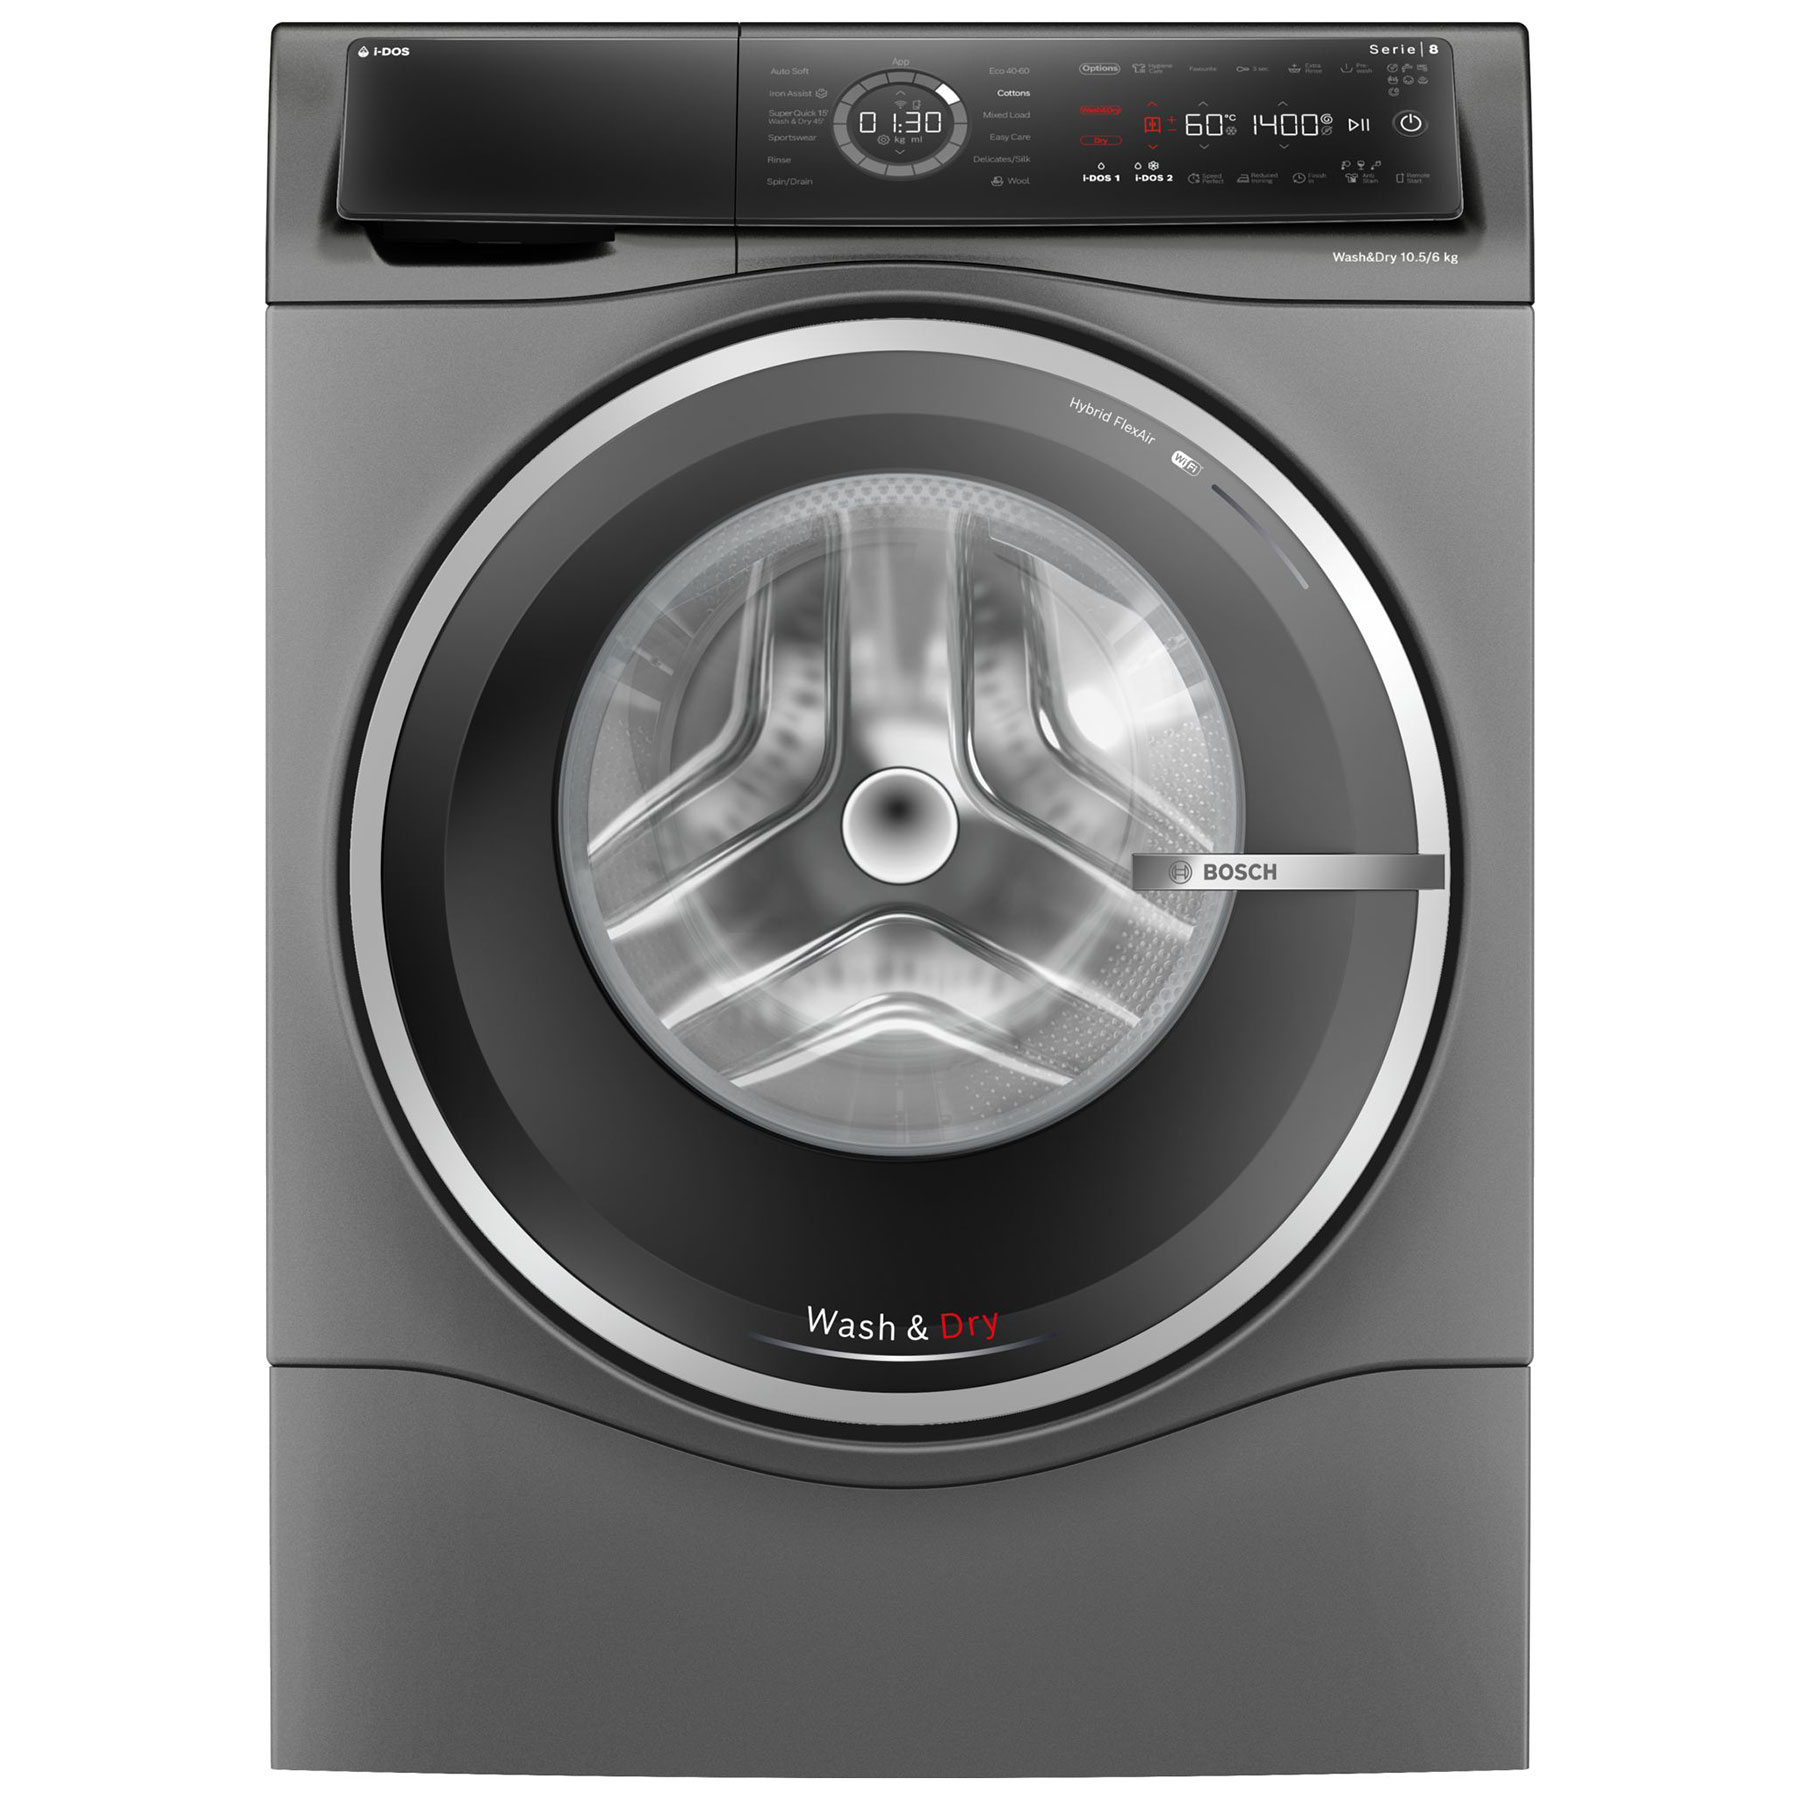 Photos - Washing Machine Bosch WNC254ARGB Series 8 Washer Dryer in Grey 1400rpm 10 5kg 6kg D 